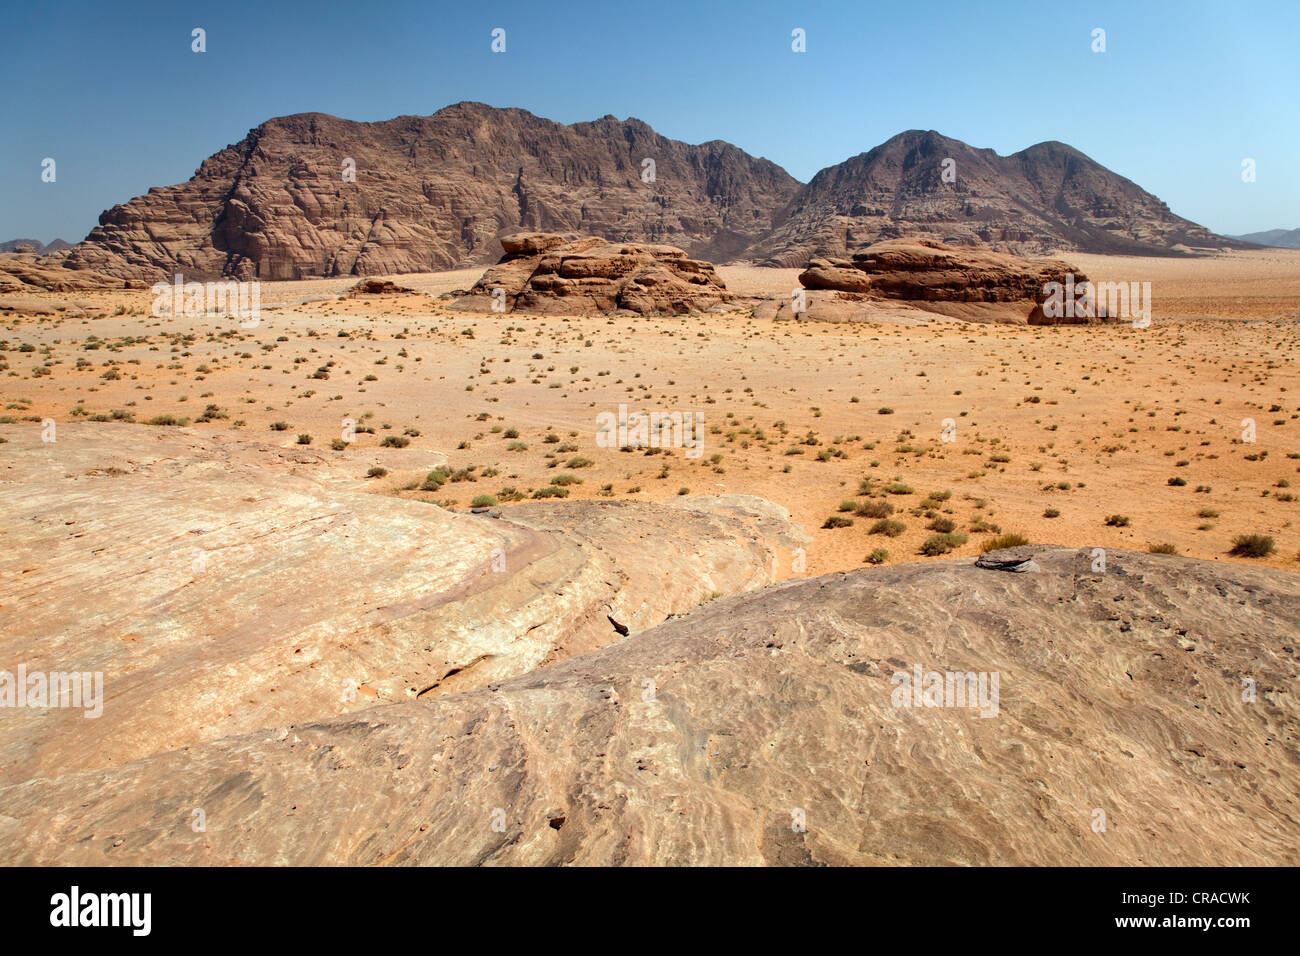 Ampia pianura, deserti, montagne, Wadi Rum, il Regno hascemita di Giordania, Medio Oriente e Asia Foto Stock